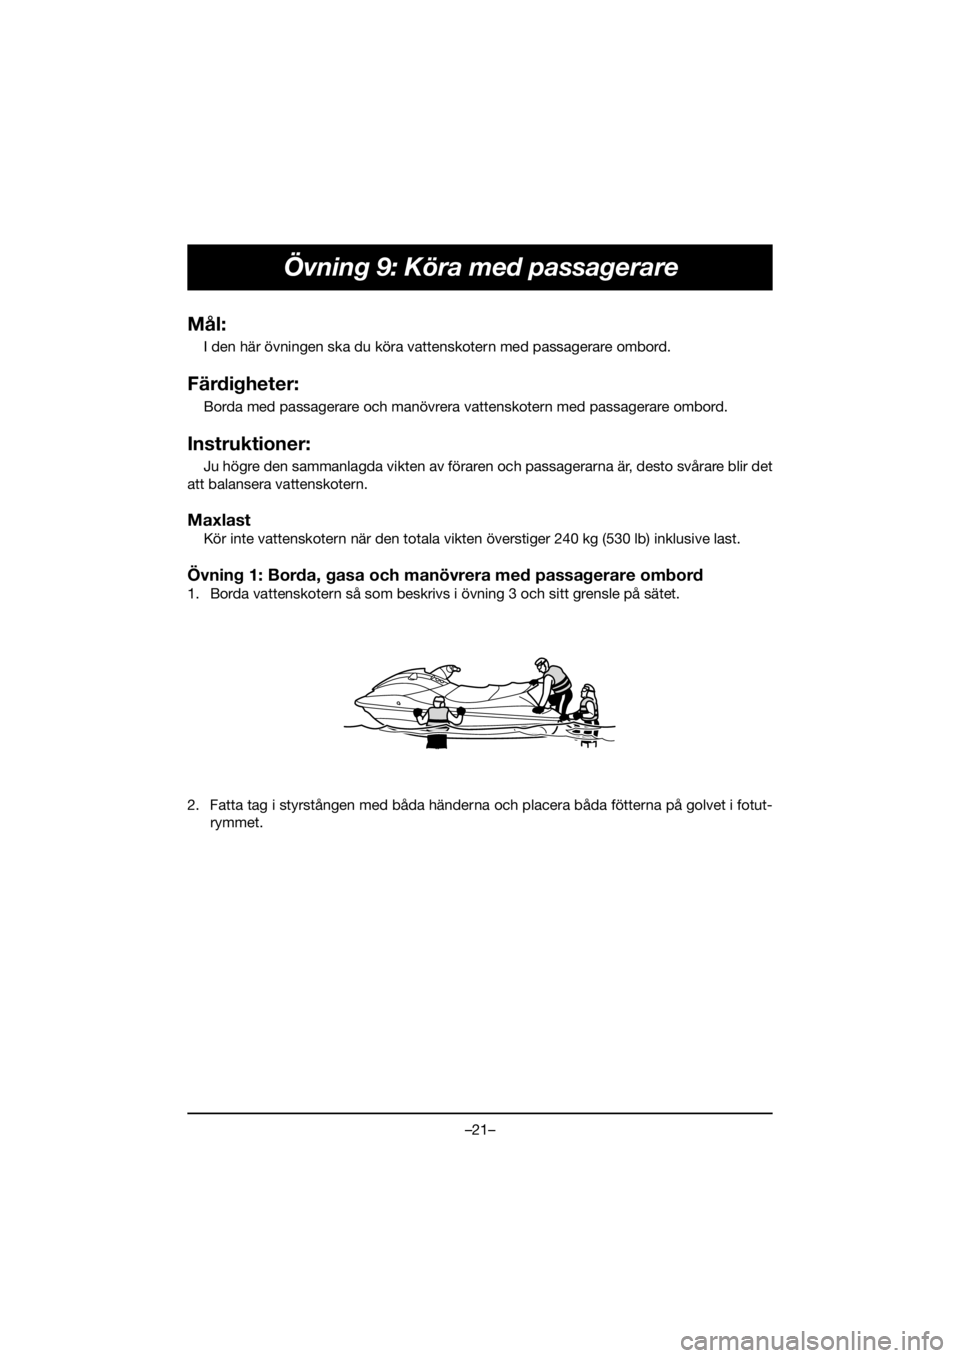 YAMAHA VX CRUISER HO 2020  Bruksanvisningar (in Swedish) –21–
Övning 9: Köra med passagerare
Mål:
I den här övningen ska du köra vattenskotern med passagerare ombord.
Färdigheter:
Borda med passagerare och manövrera vattenskotern med passagerare